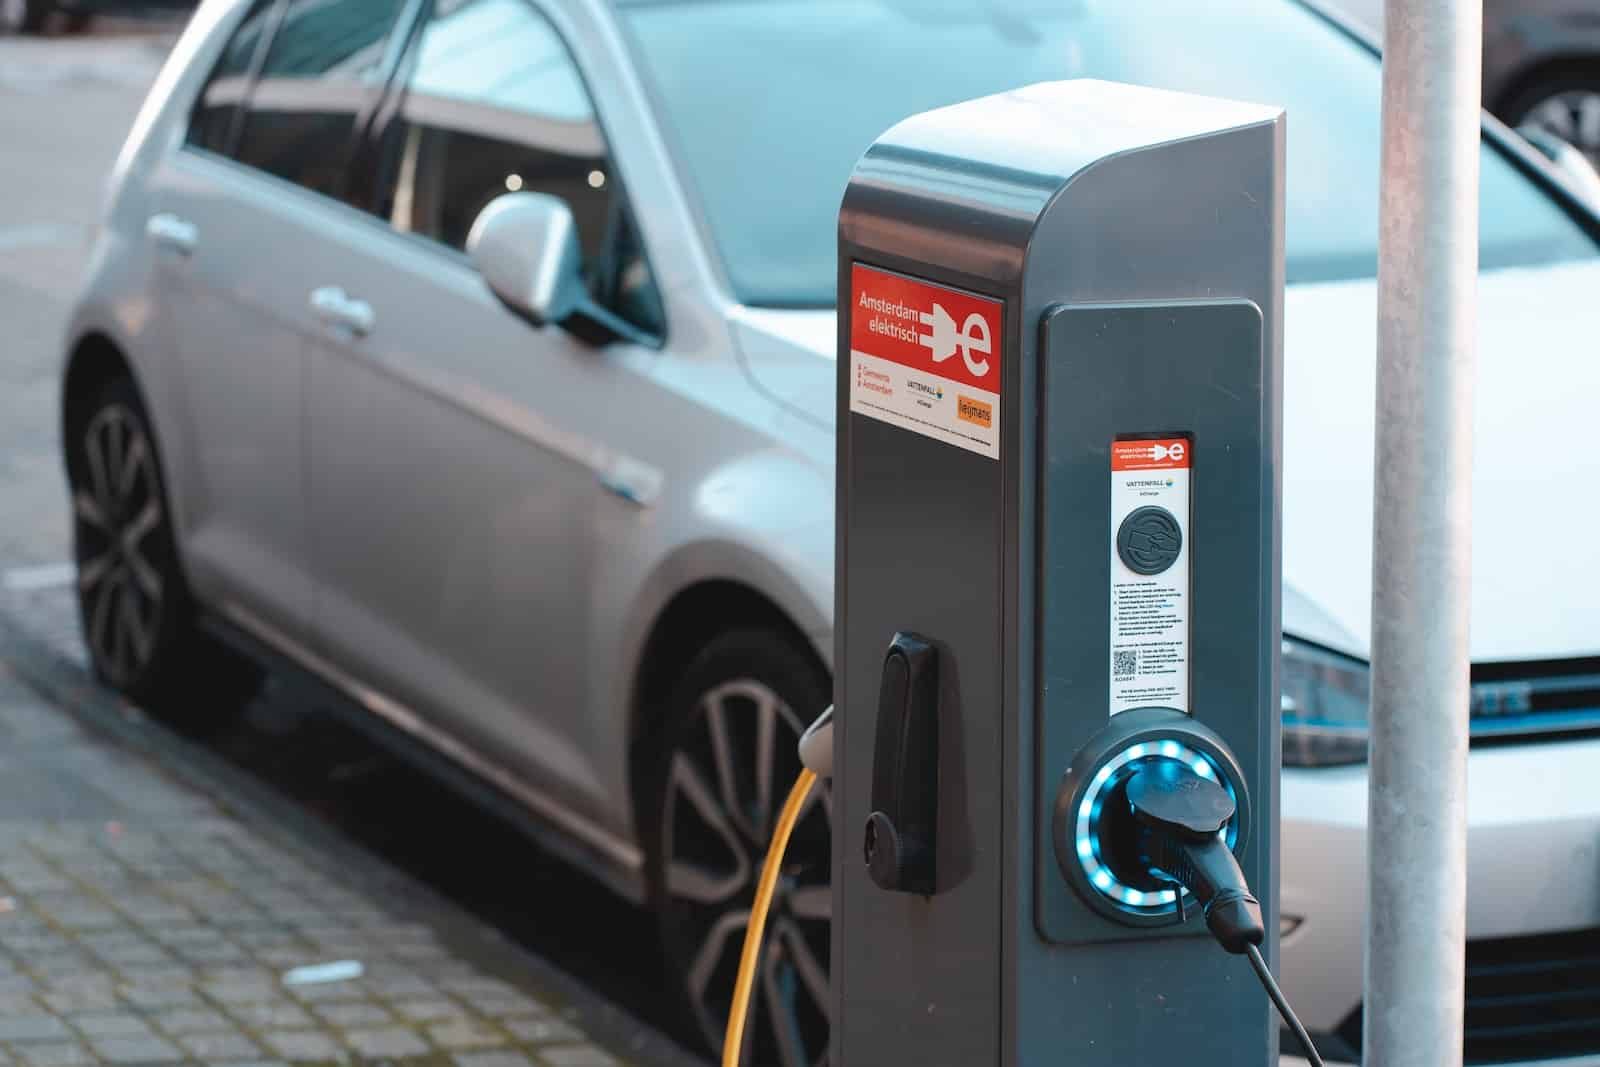 Kit de conversion pour véhicule électrique : transformer votre voiture en voiture électrique